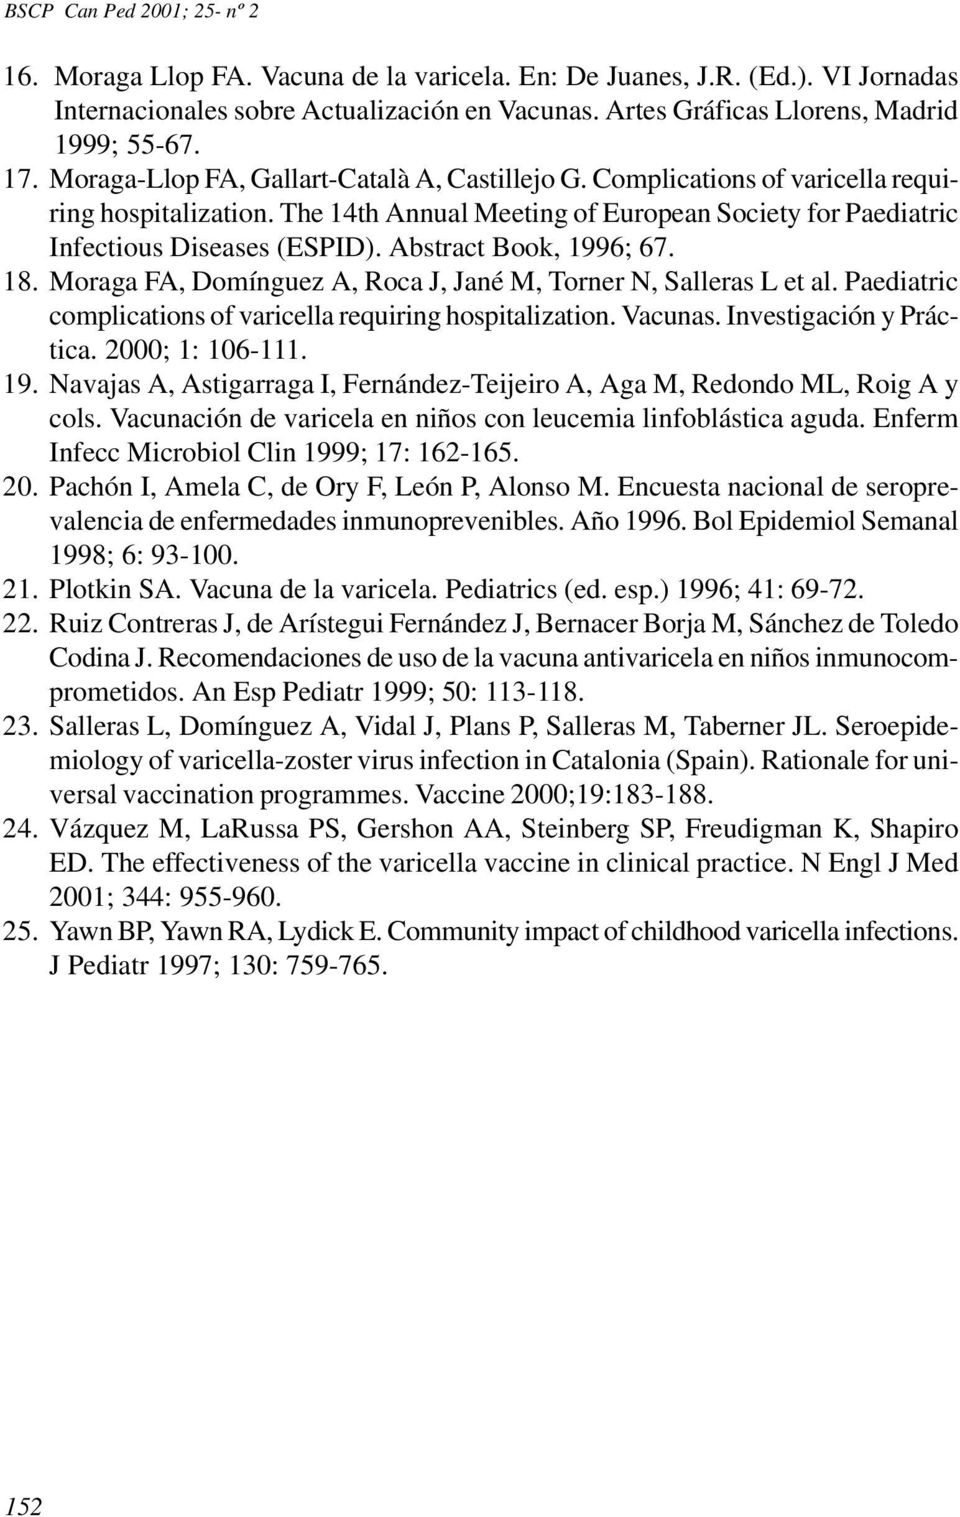 Abstract Book, 1996; 67. 18. Moraga FA, Domínguez A, Roca J, Jané M, Torner N, Salleras L et al. Paediatric complications of varicella requiring hospitalization. Vacunas. Investigación y Práctica.